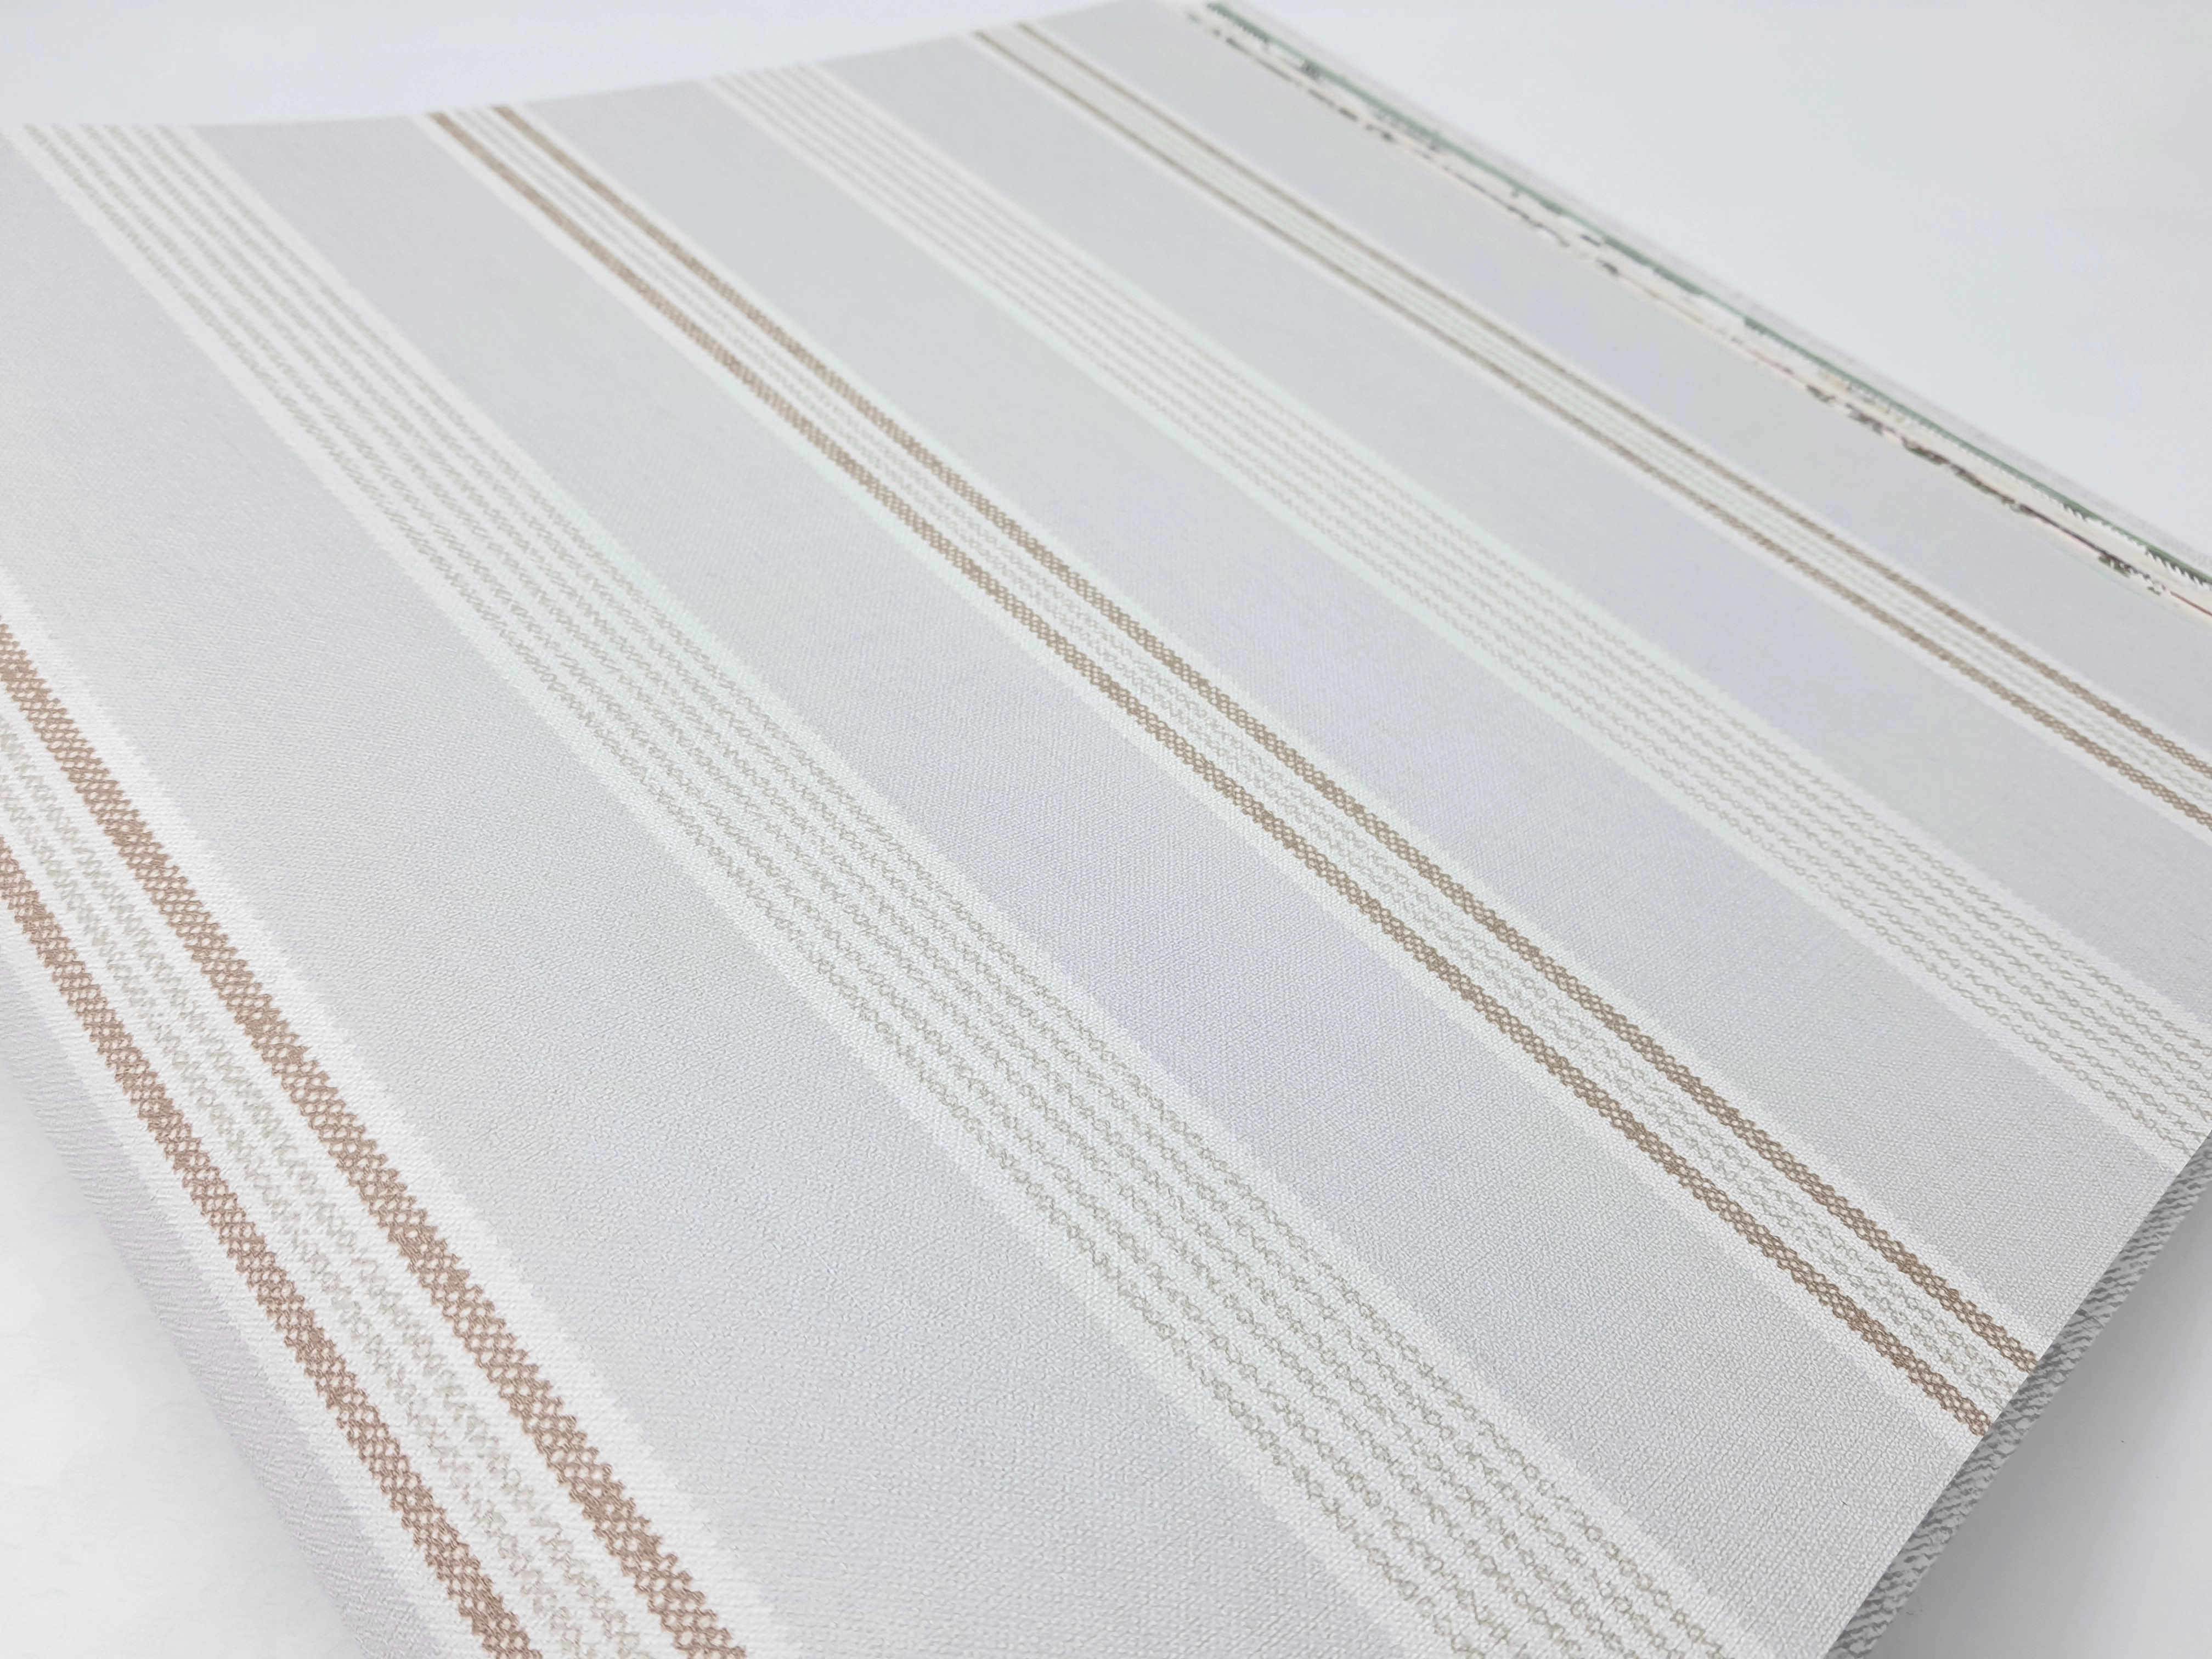 Klasszikus szürke csíkos mintás dekor tapéta textilhatású strukturával